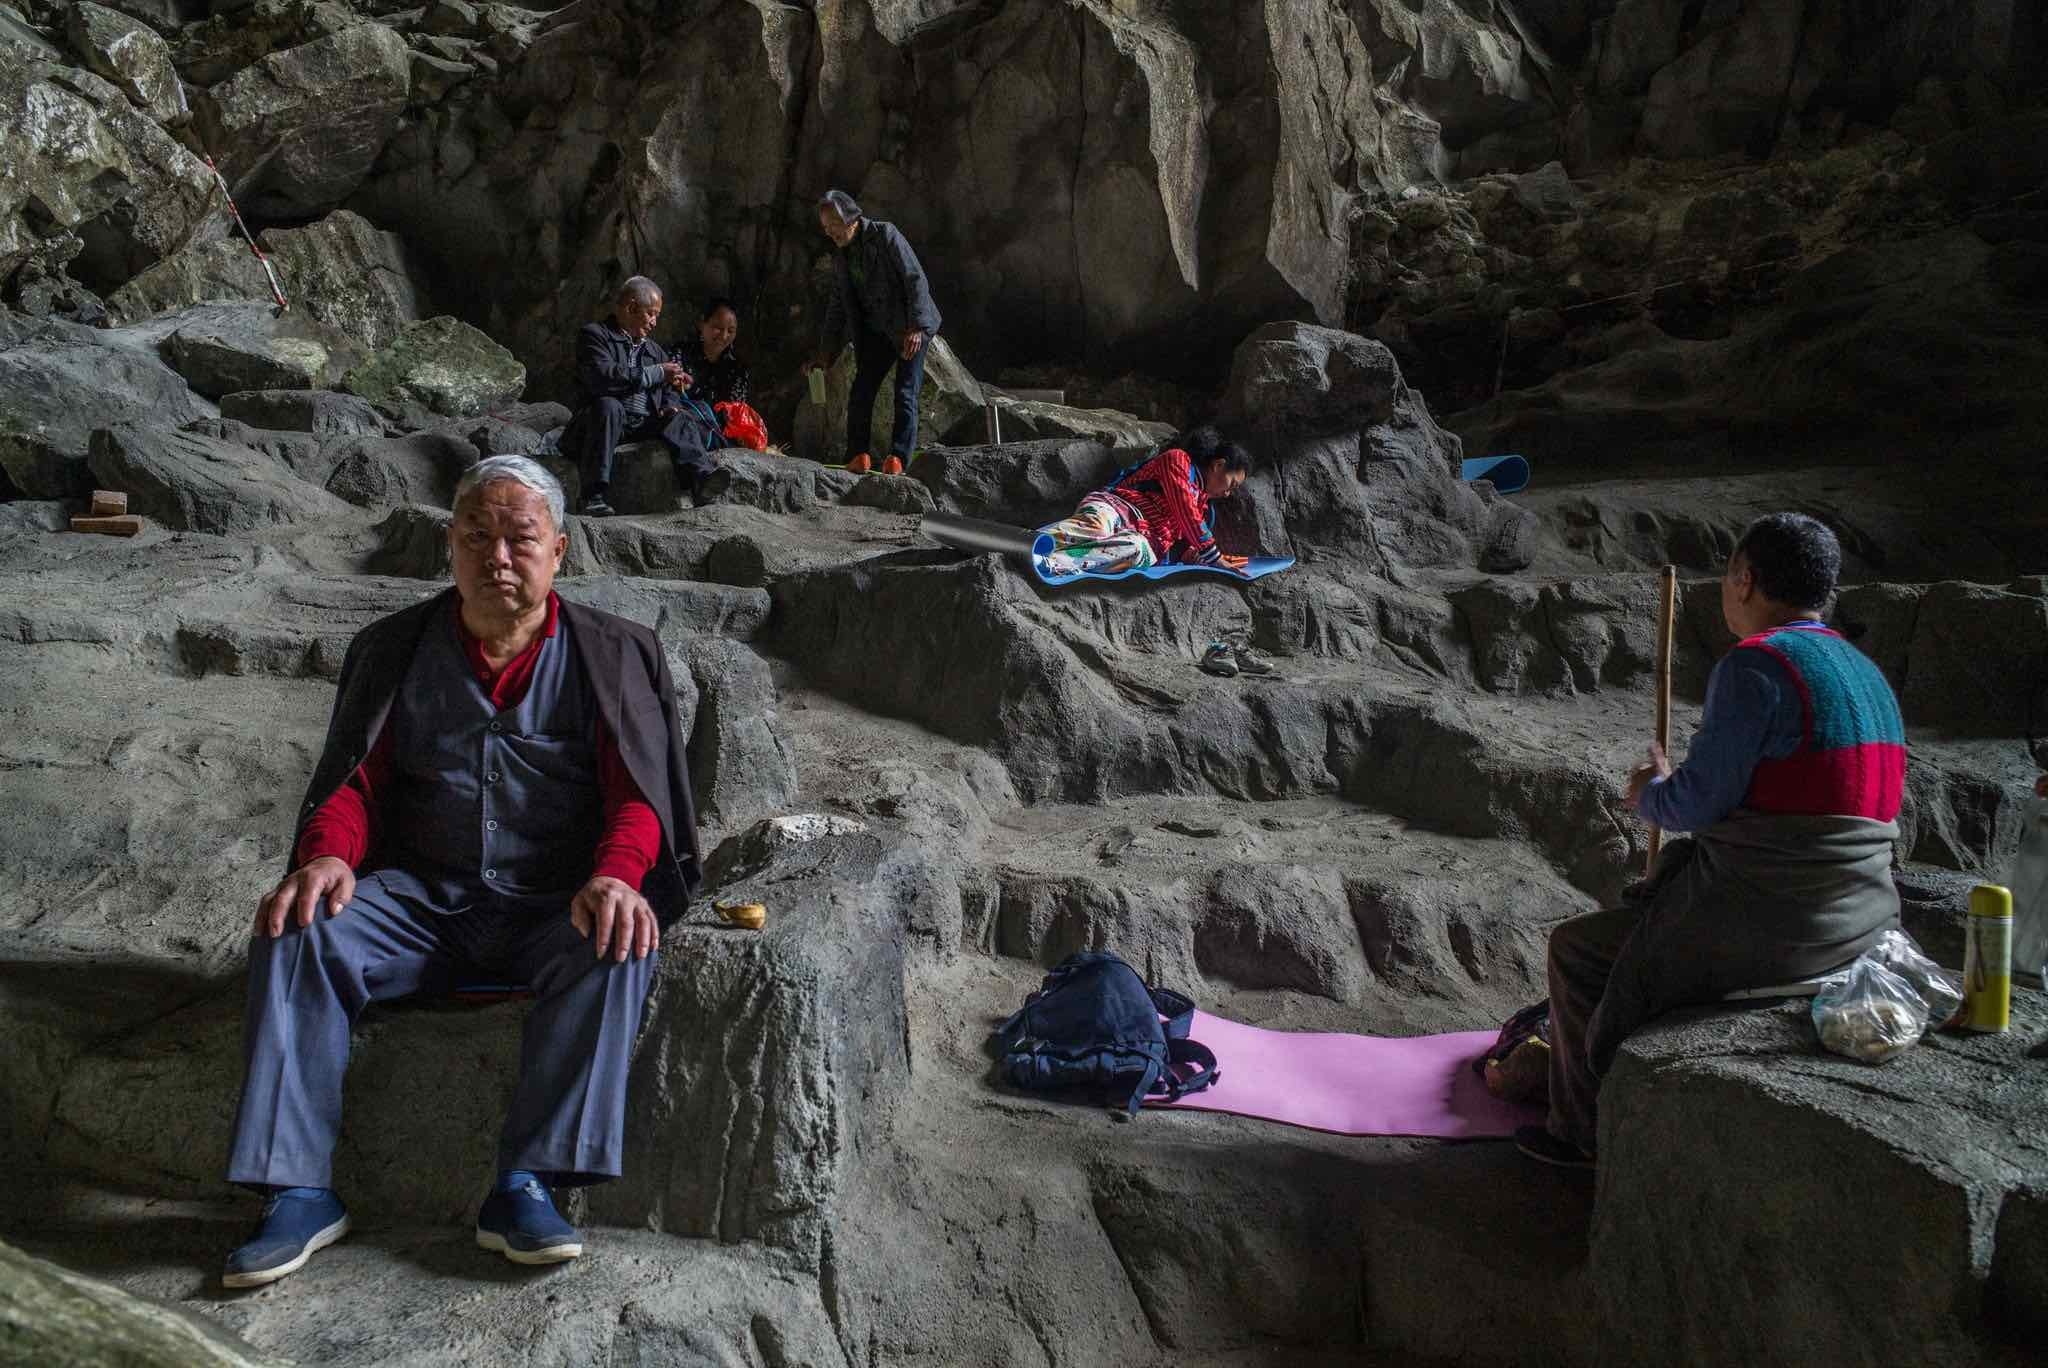 Ở Trung Quốc, những người mong muốn sống lâu hơn đến Quận Bama để hít thở không khí bên trong một hang động tên là Baimo, nơi được cho là có khả năng chữa bệnh.. (Nguồn: New York Times)